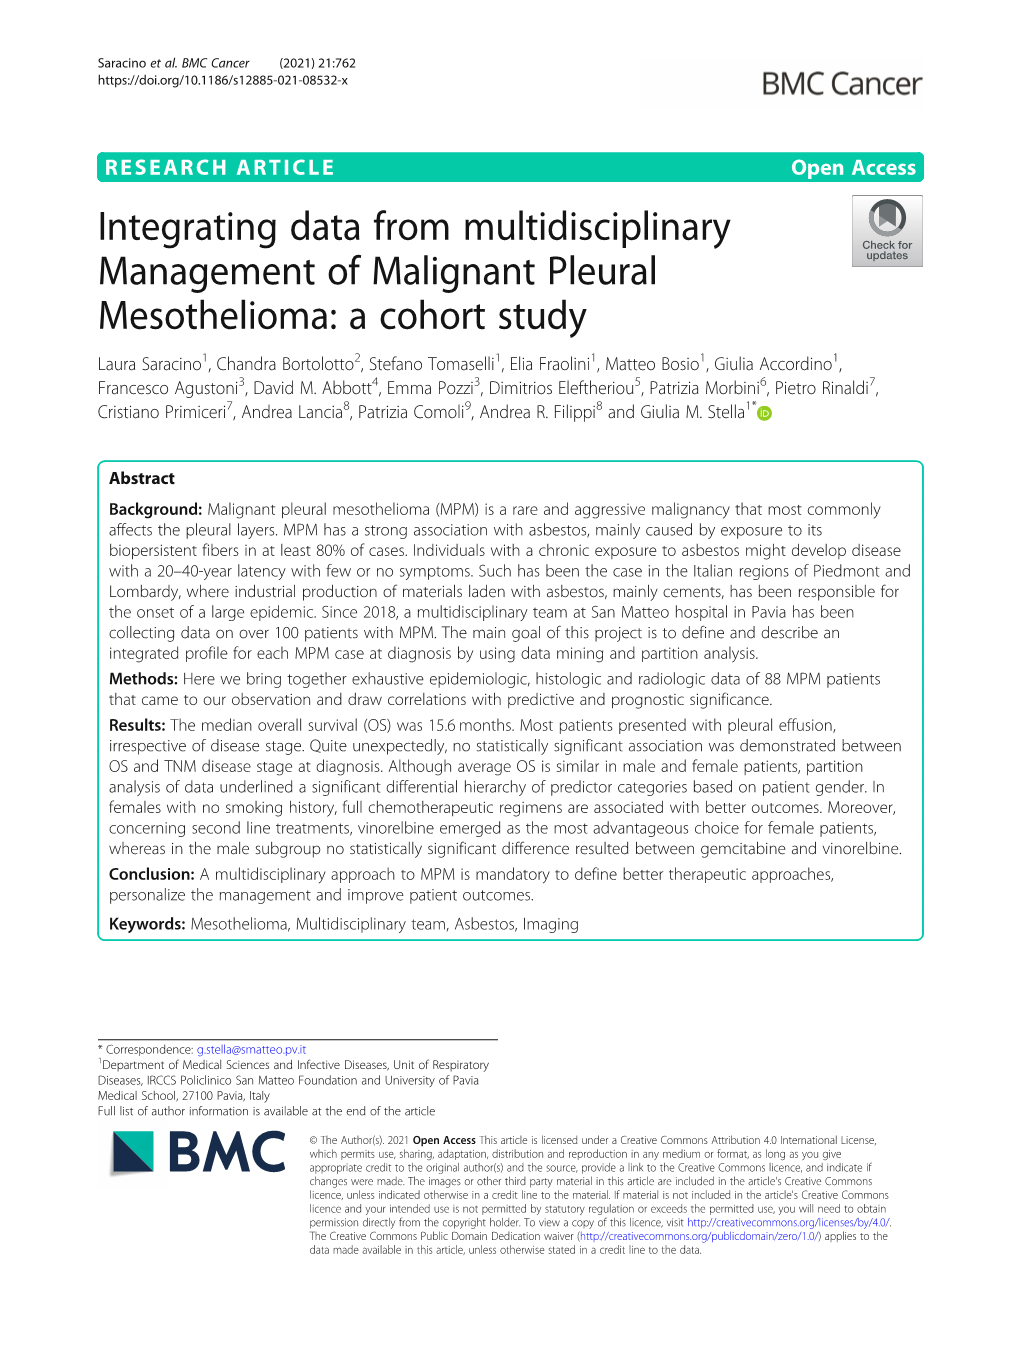 Integrating Data from Multidisciplinary Management Of